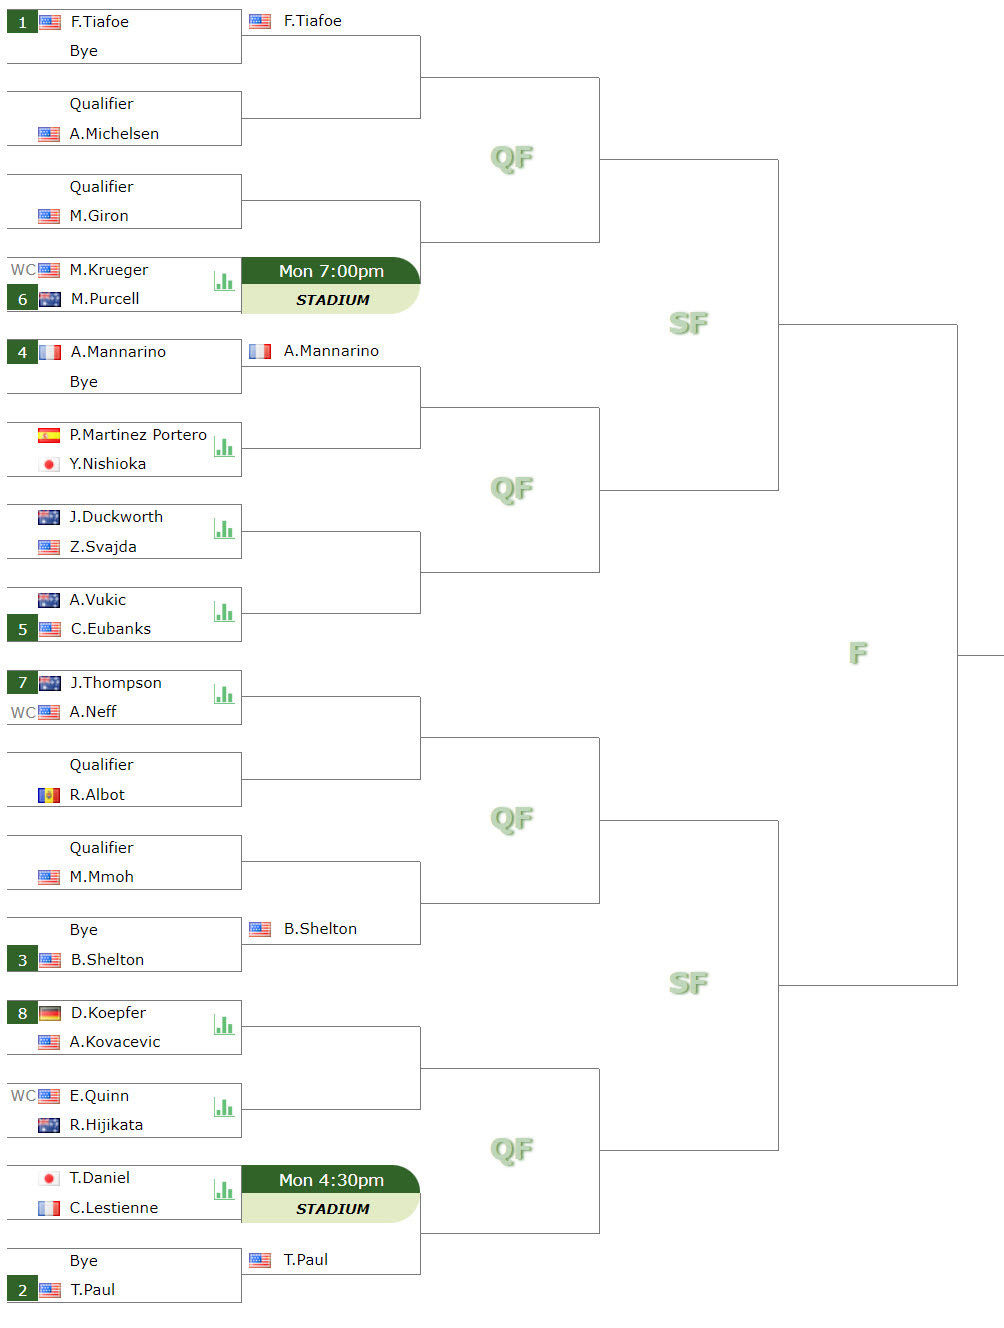 ATP Dallas draw Tiafoe, Paul, Shelton, Mannarino are the top seeds